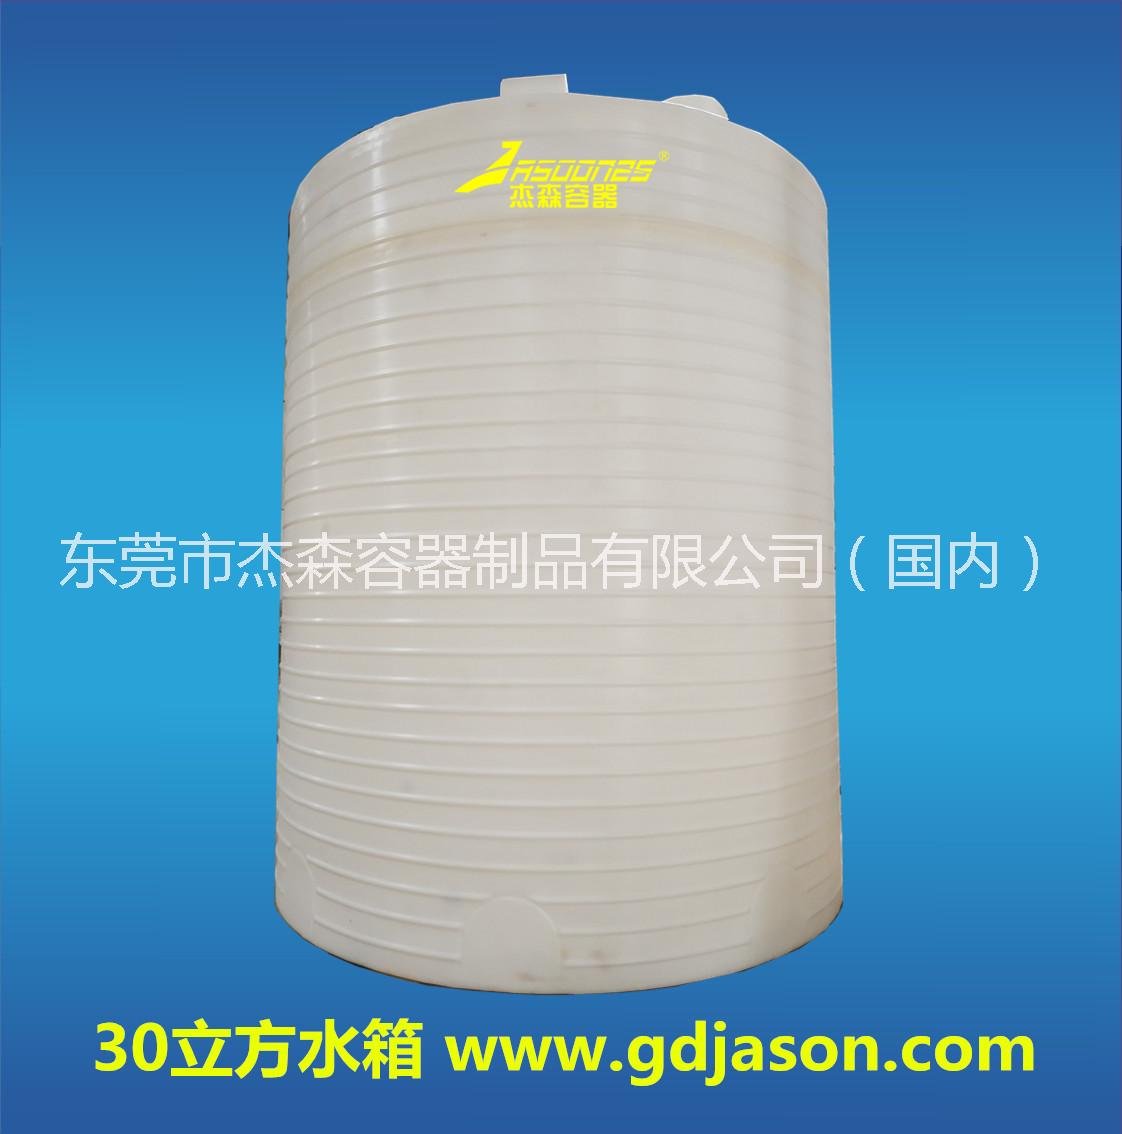 化工塑料圆桶 50吨塑料 化工塑料圆桶50吨塑料